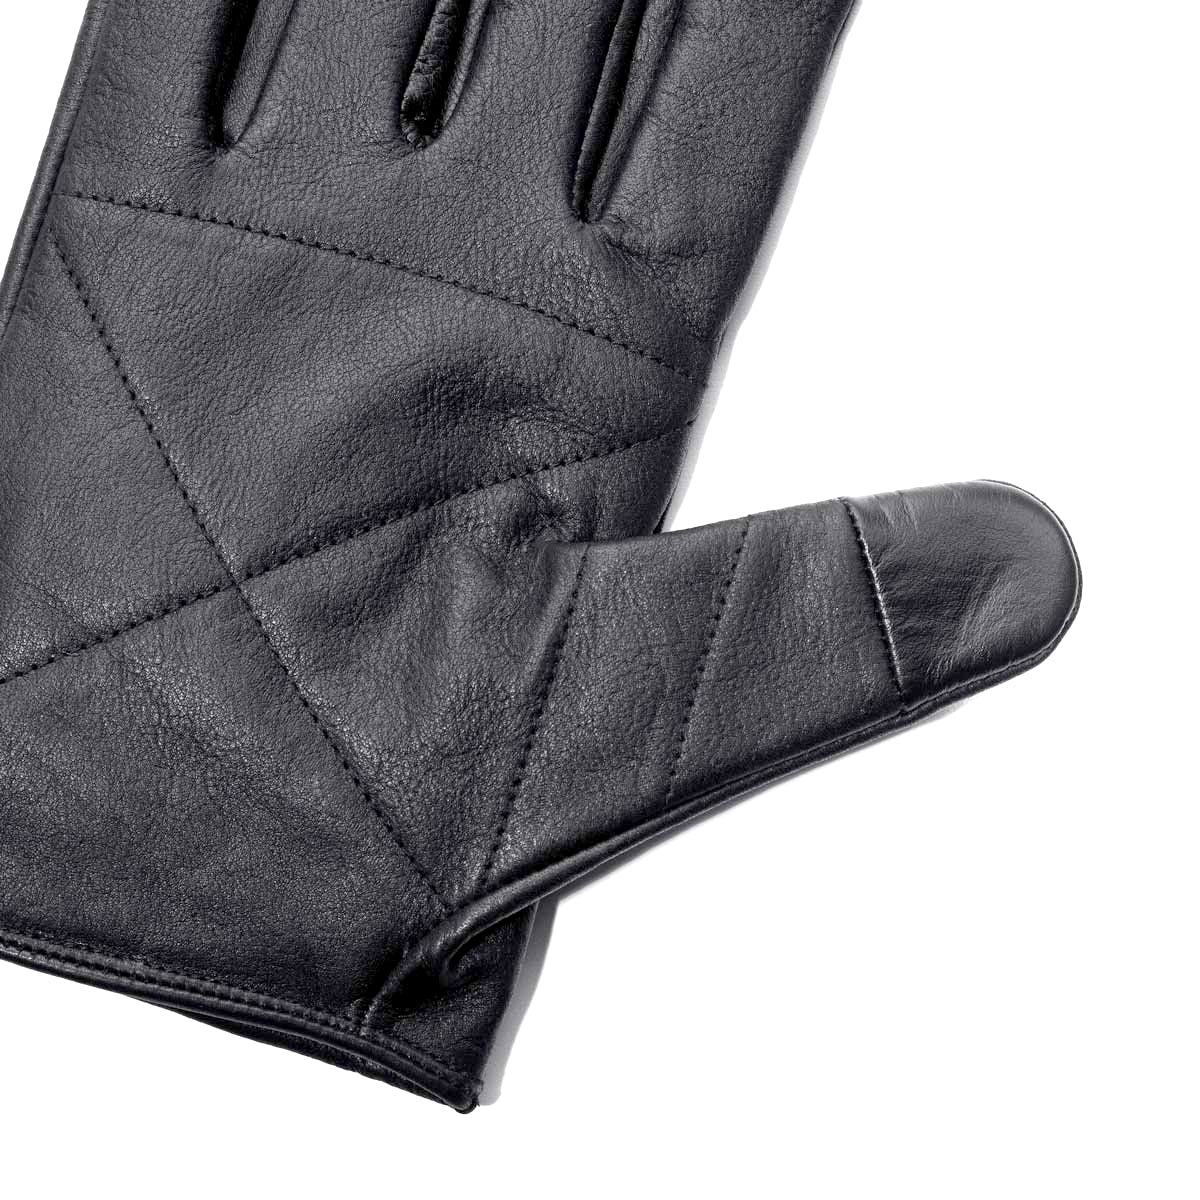 The Varis - Mission Workshop Collaboration Gloves, Black